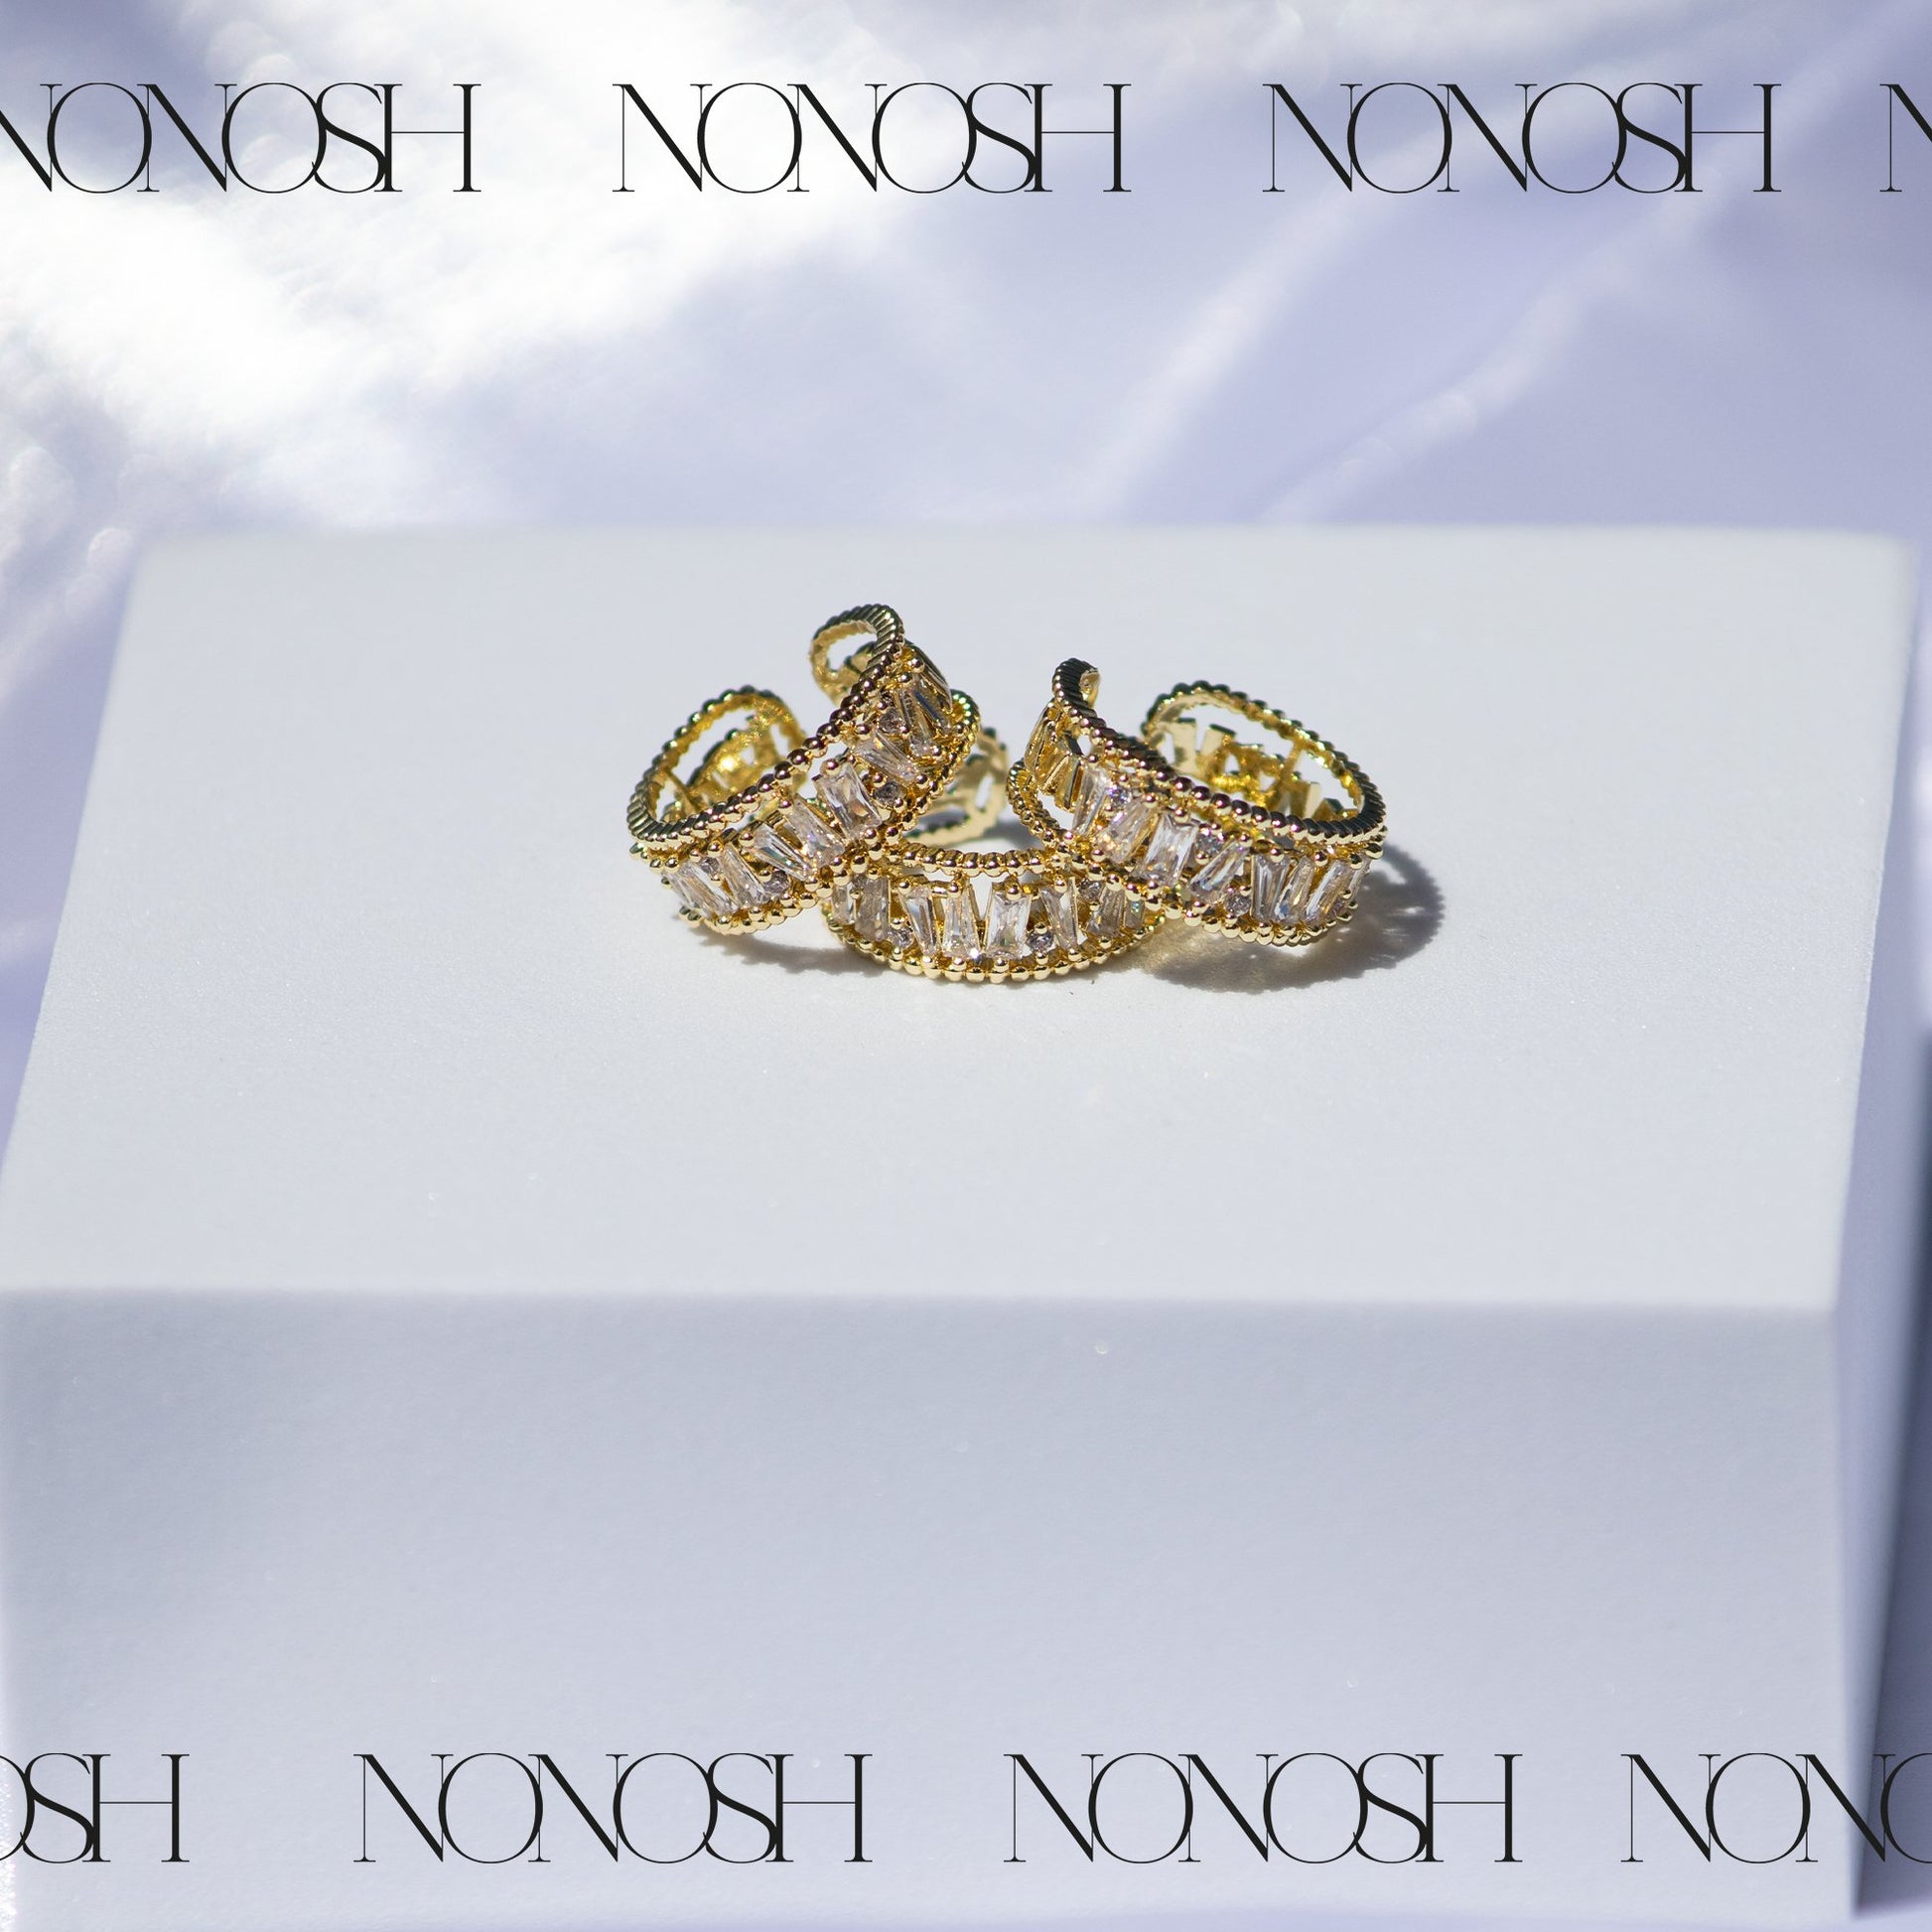 18k vergoldeter Ring Pi Verstellbar - NONOSH